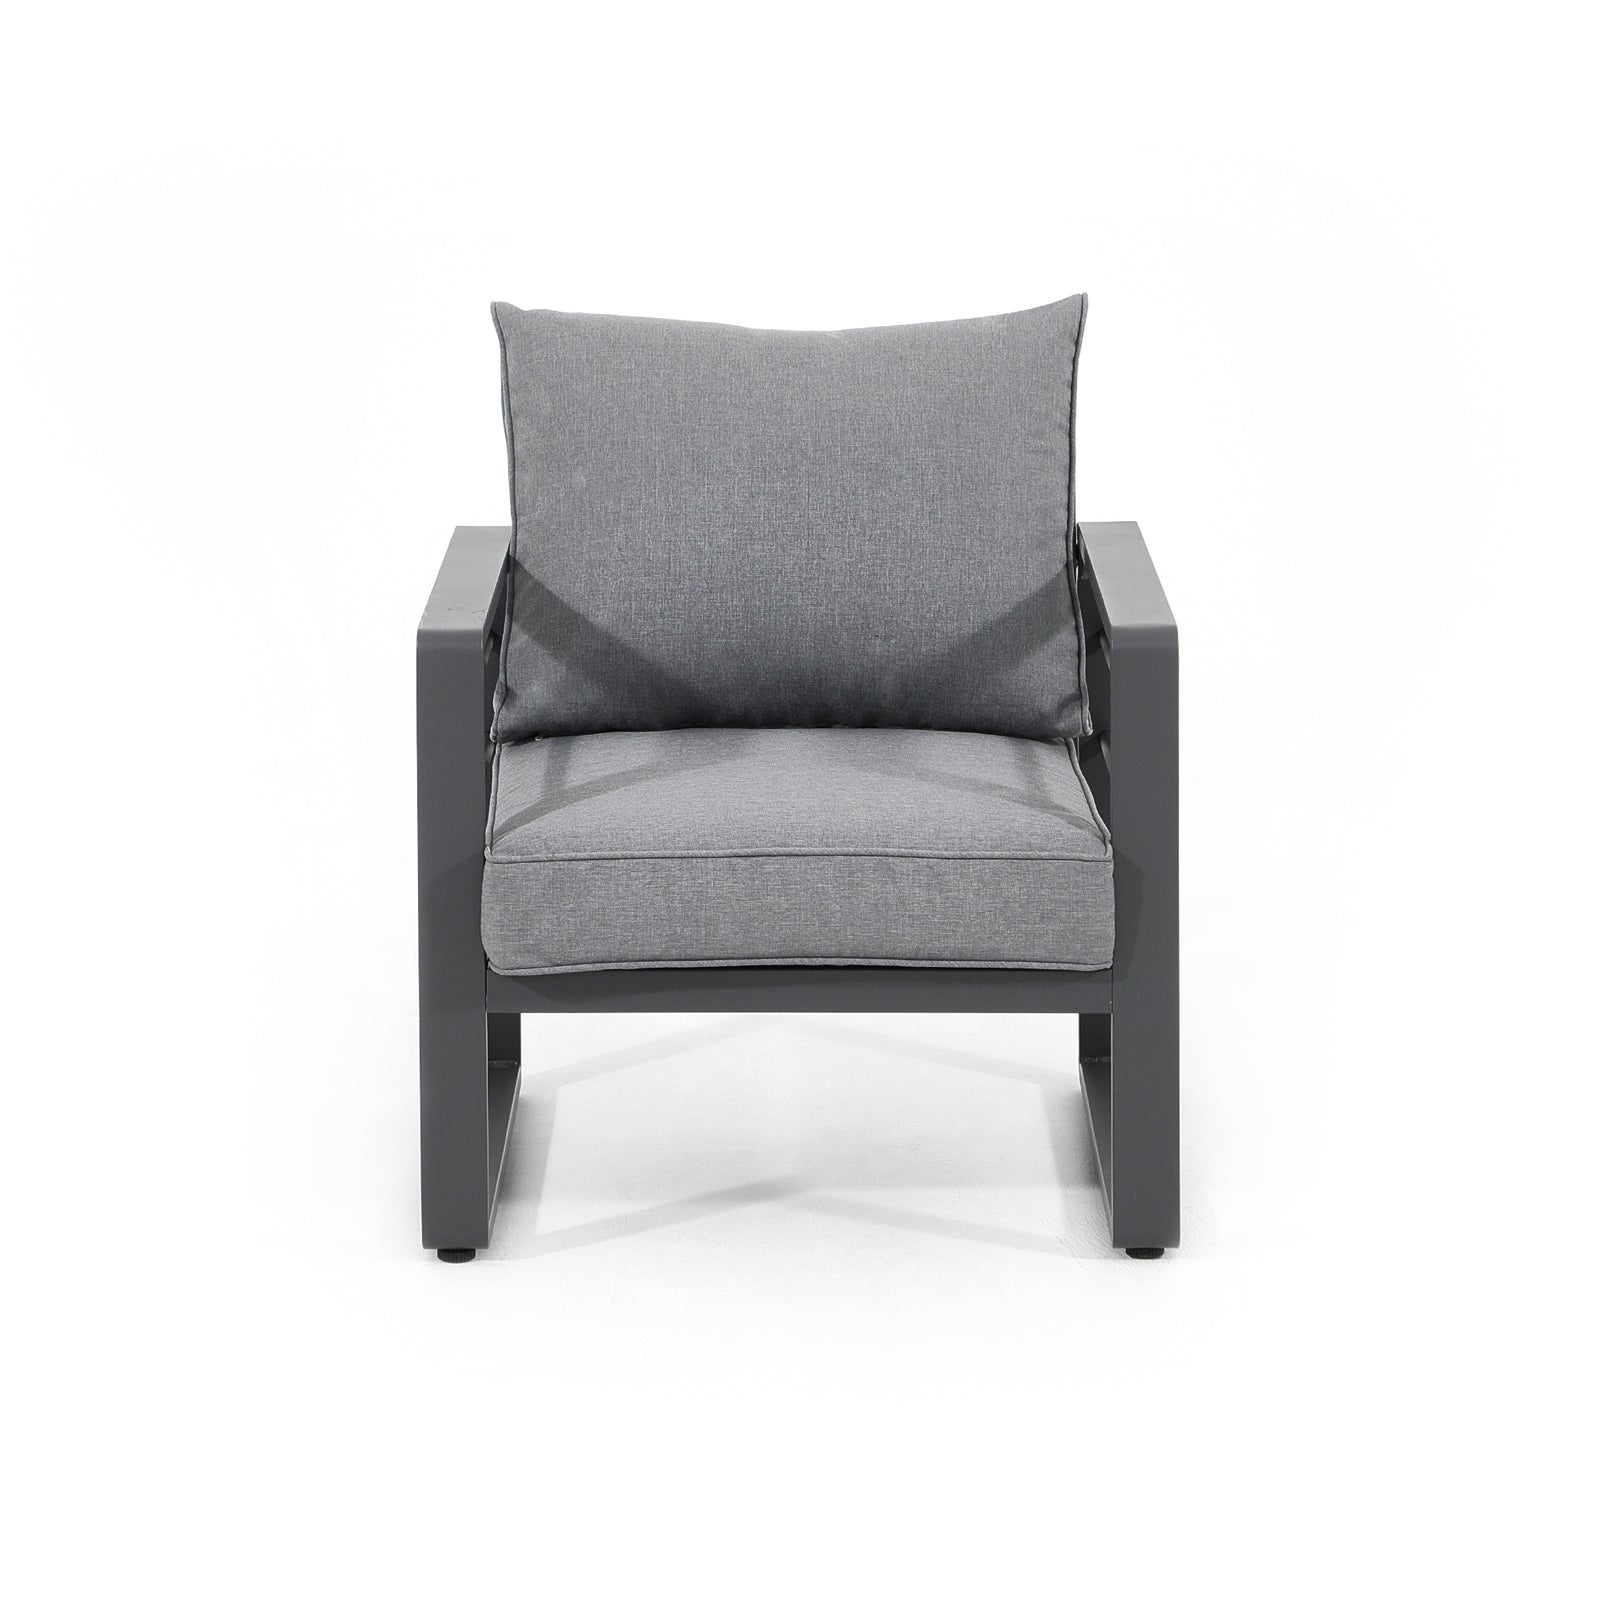 Salina Modern Aluminum Outdoor Furniture, Grey Outdoor Lounge Chairs with Grey Cushions - Jardina Furniture